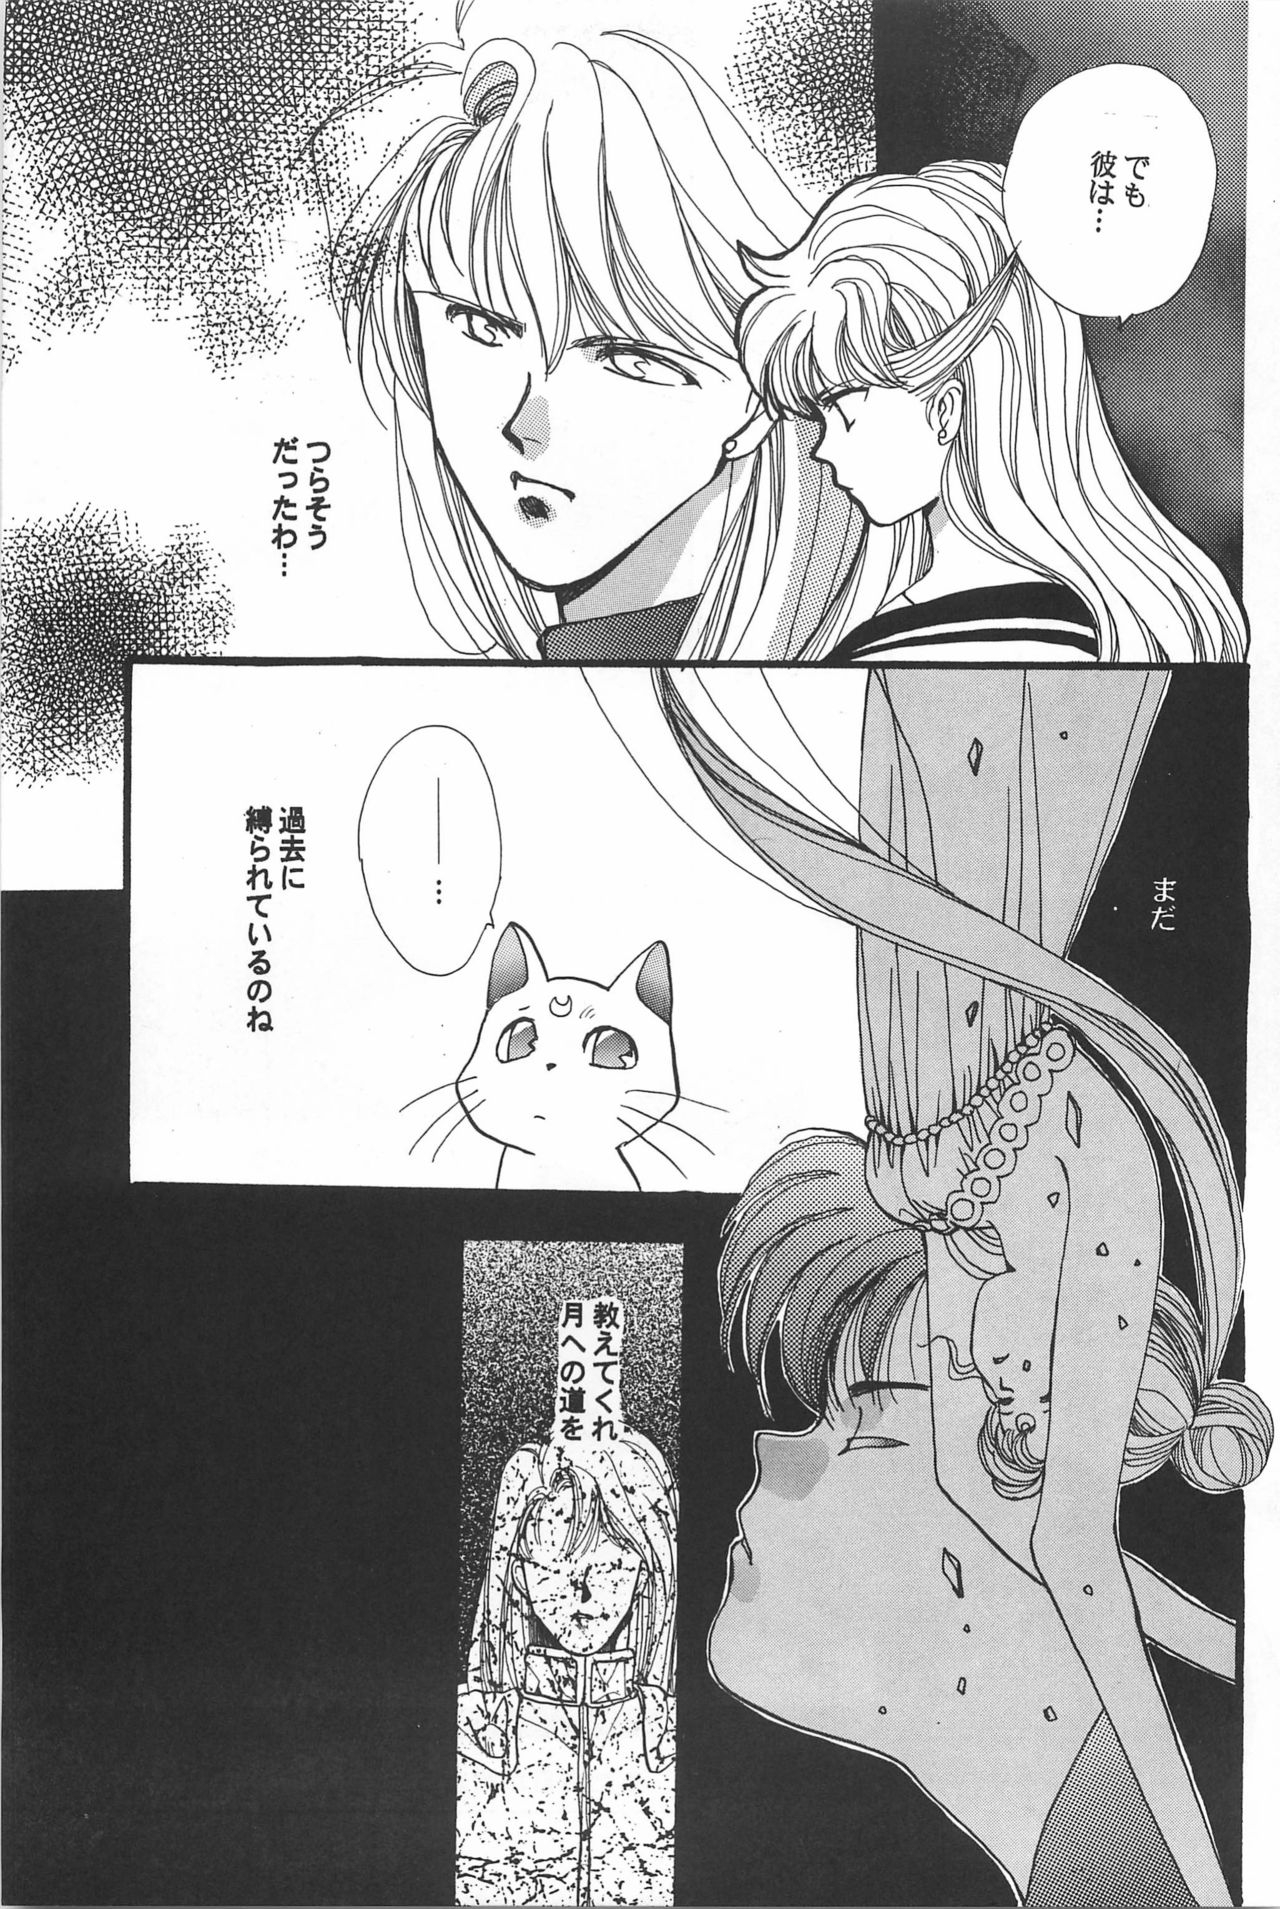 [Hello World (Muttri Moony)] Kaze no You ni Yume no You ni - Sailor Moon Collection (Sailor Moon) 114